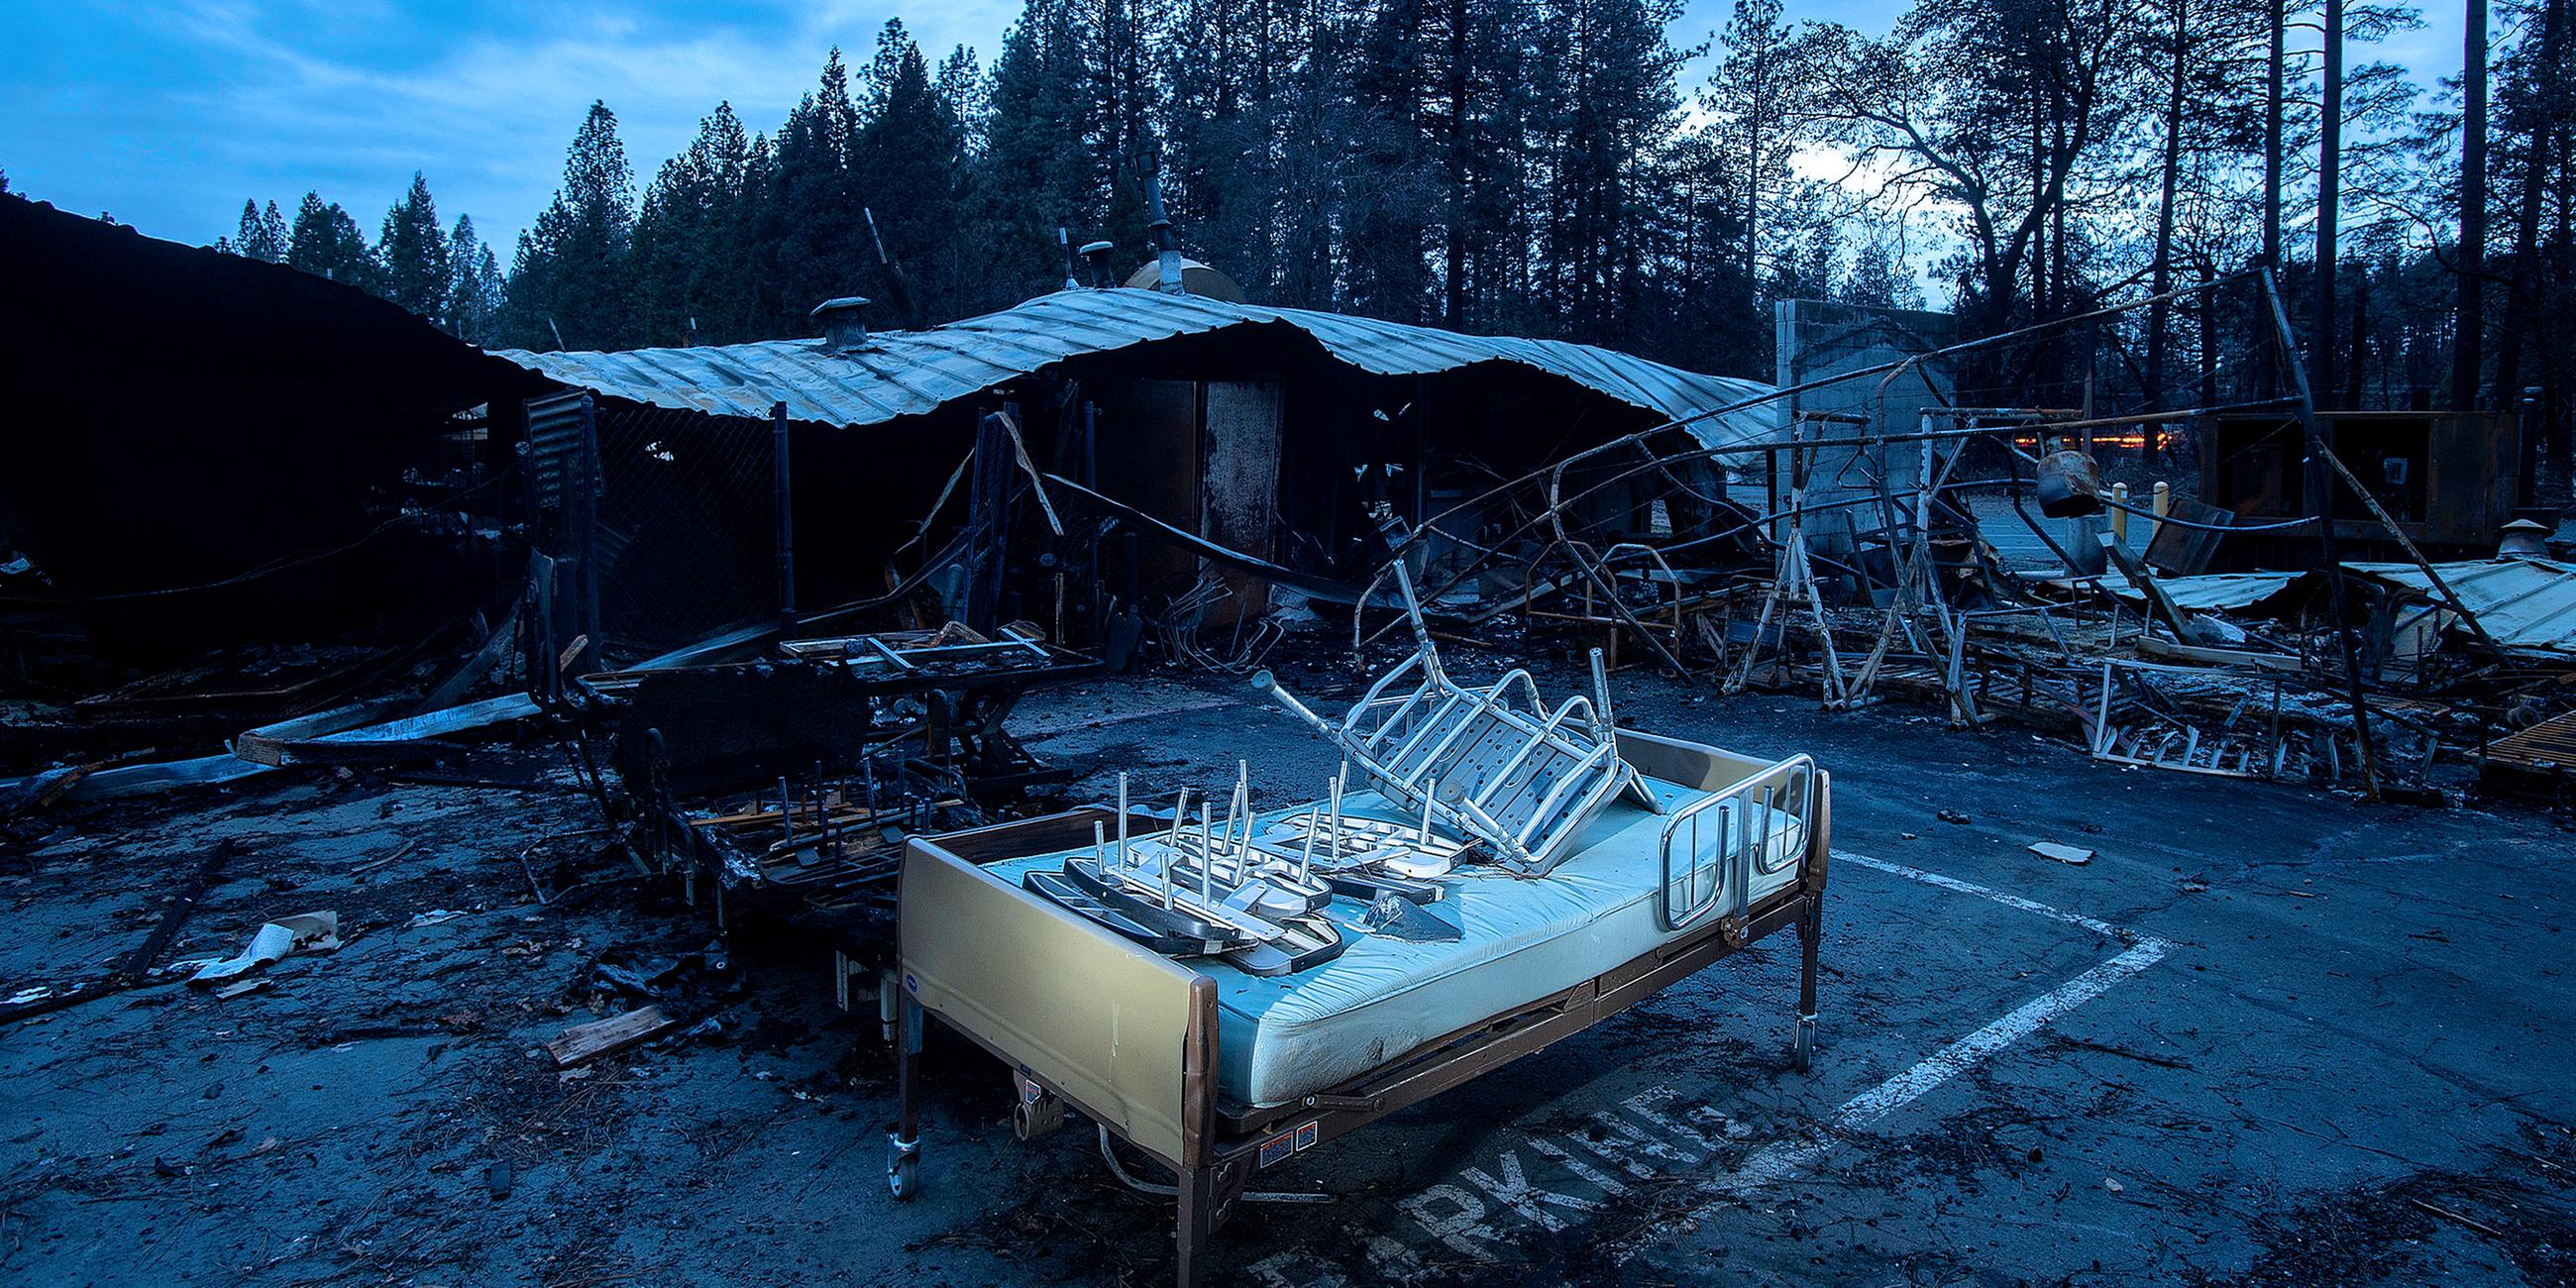 Ein Bett inmitten der Zerstörung in Paradise, aufgenommen am 04.12.2018